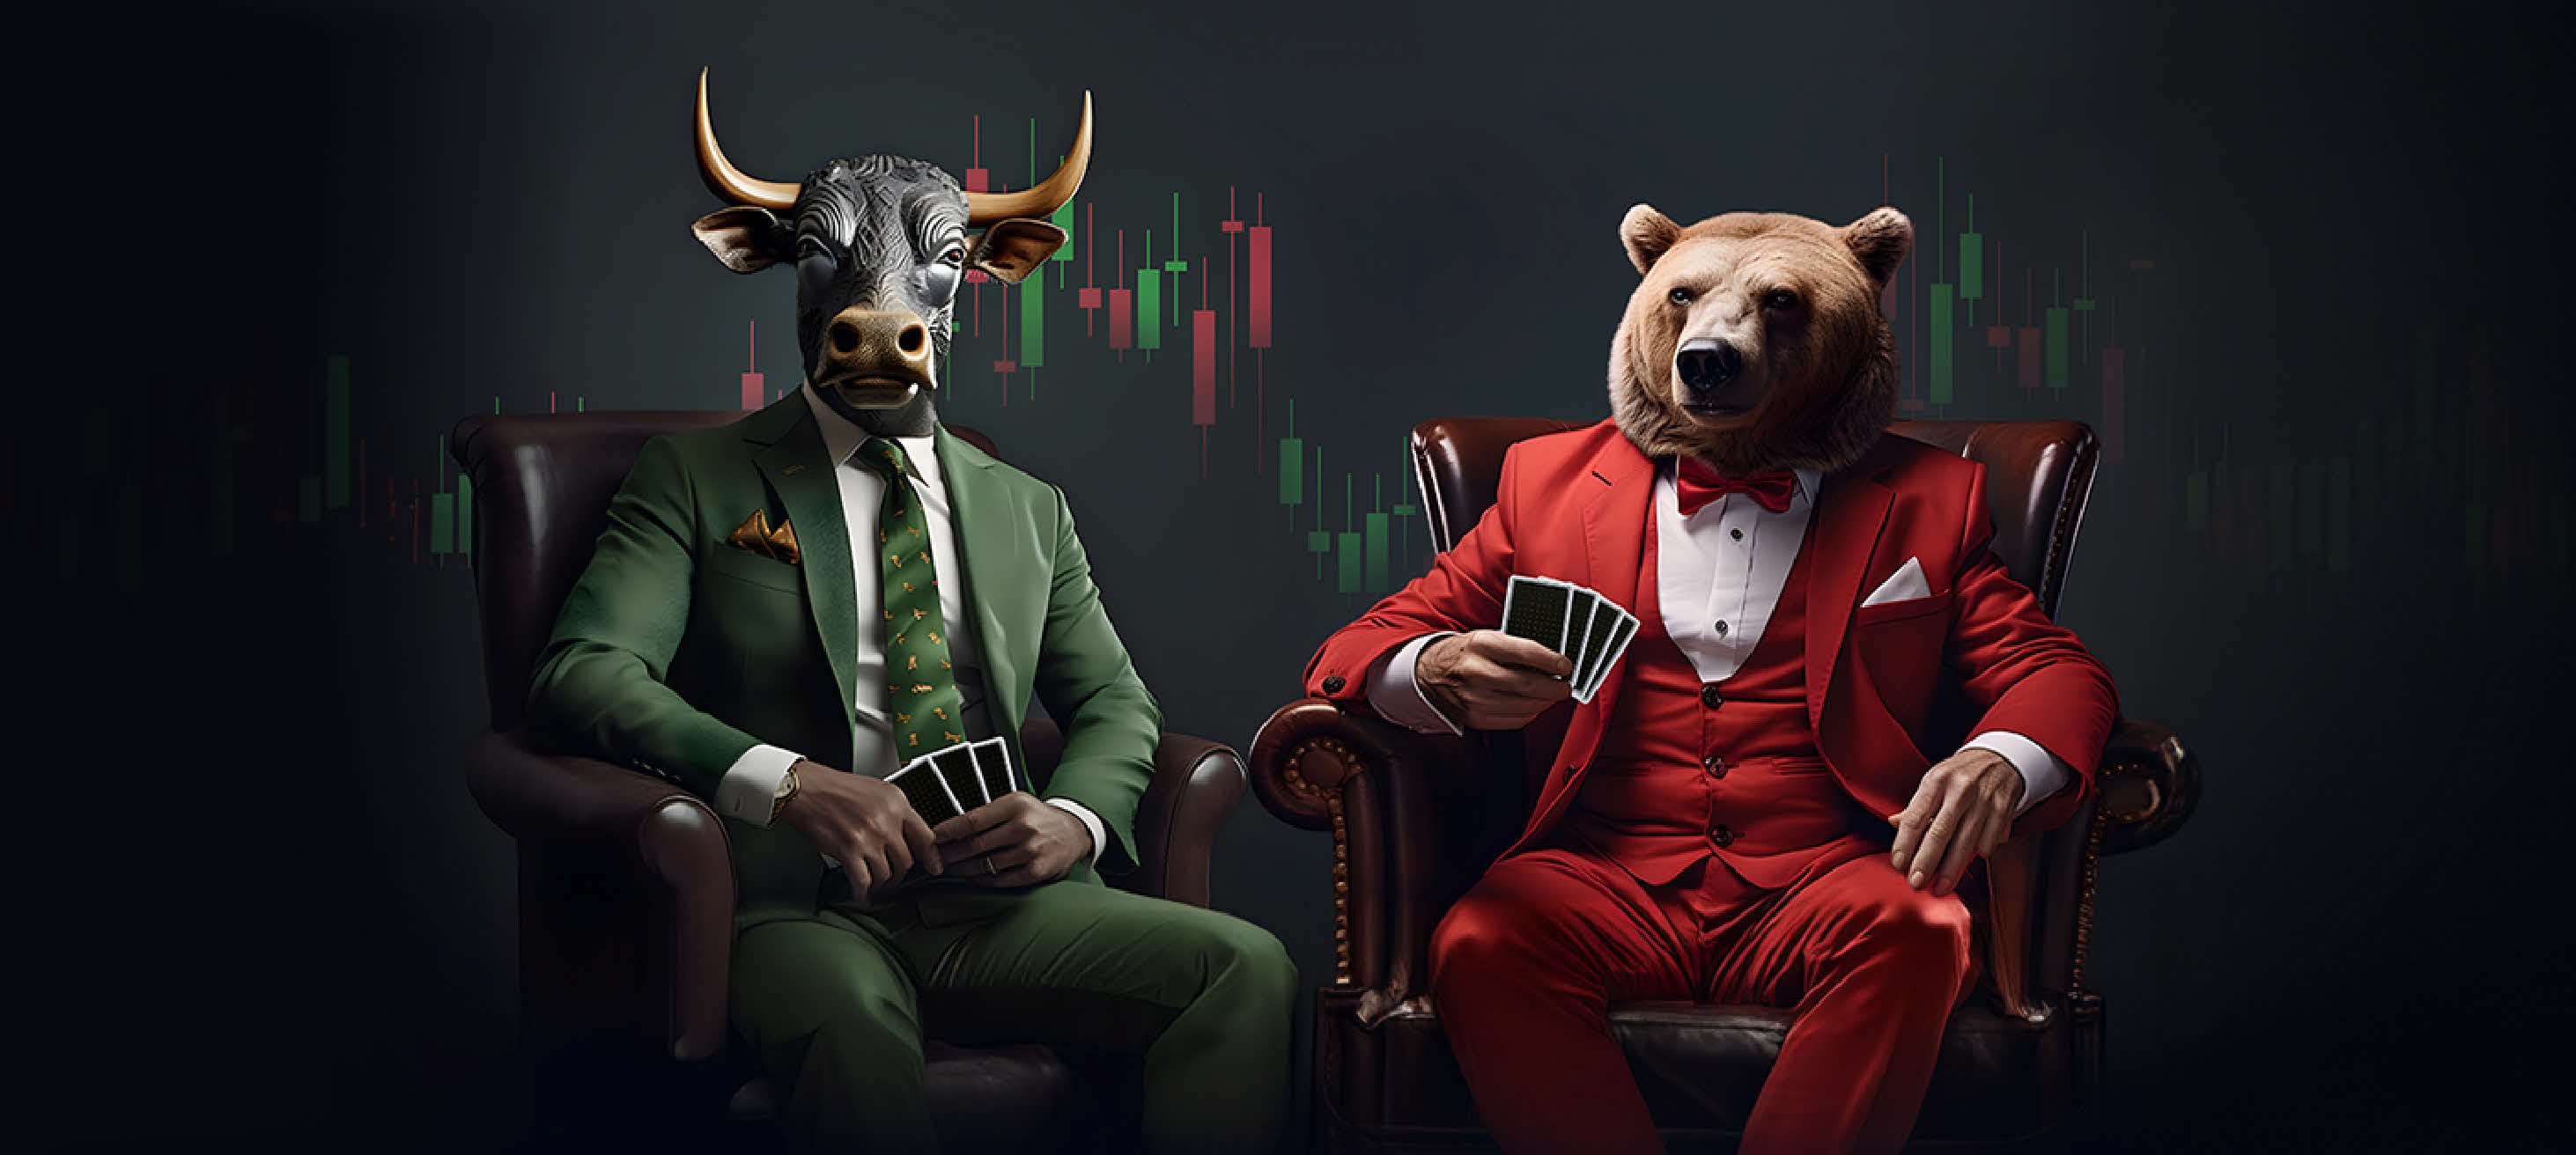 Strategi Investasi untuk Bull and Bear Market